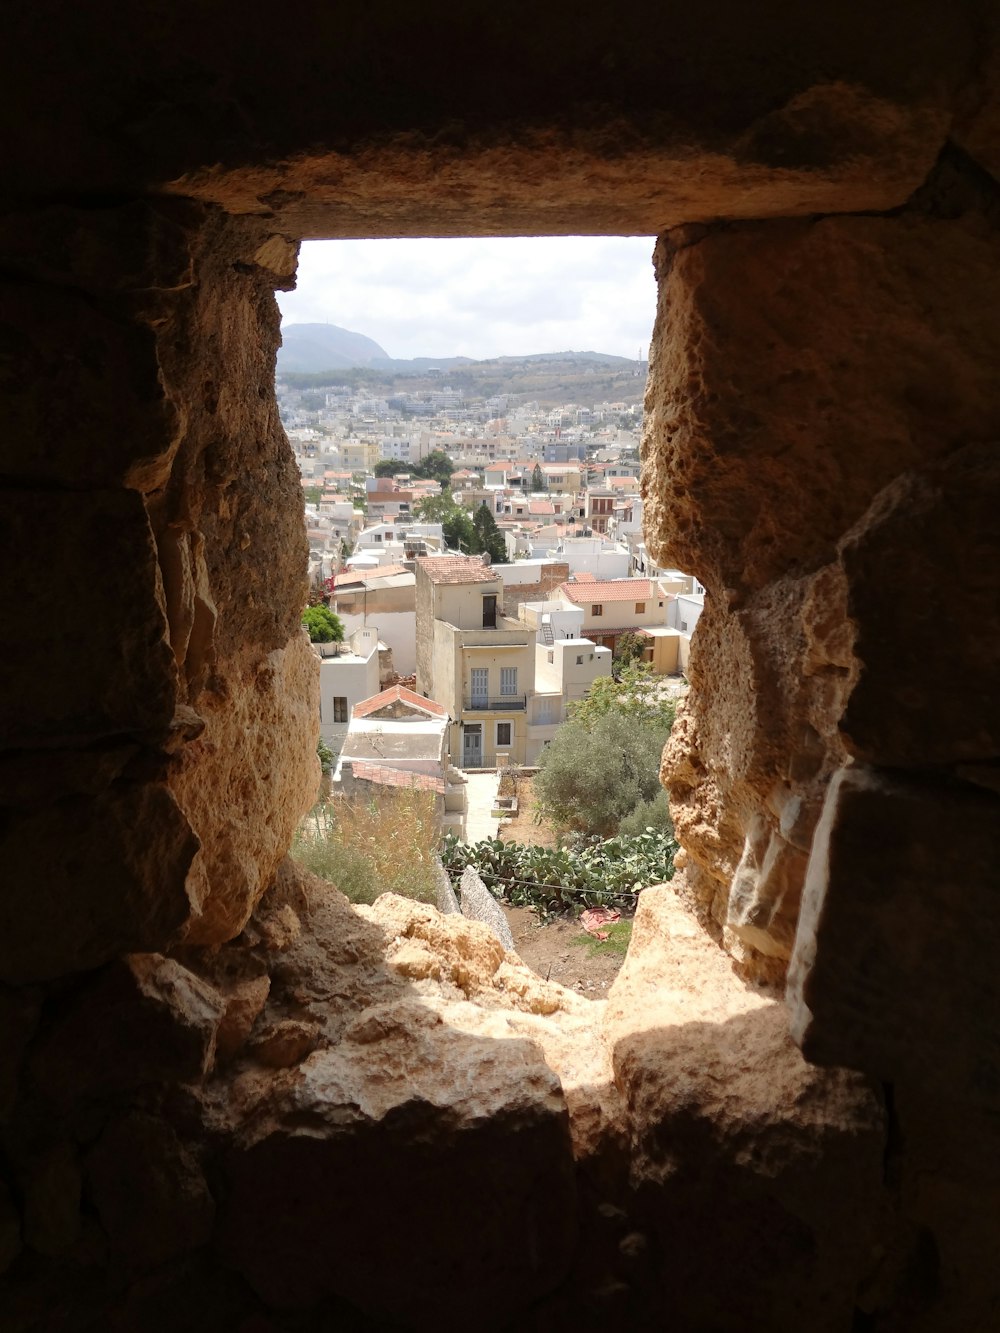 Blick auf eine Stadt aus einem Fenster in einem Steingebäude